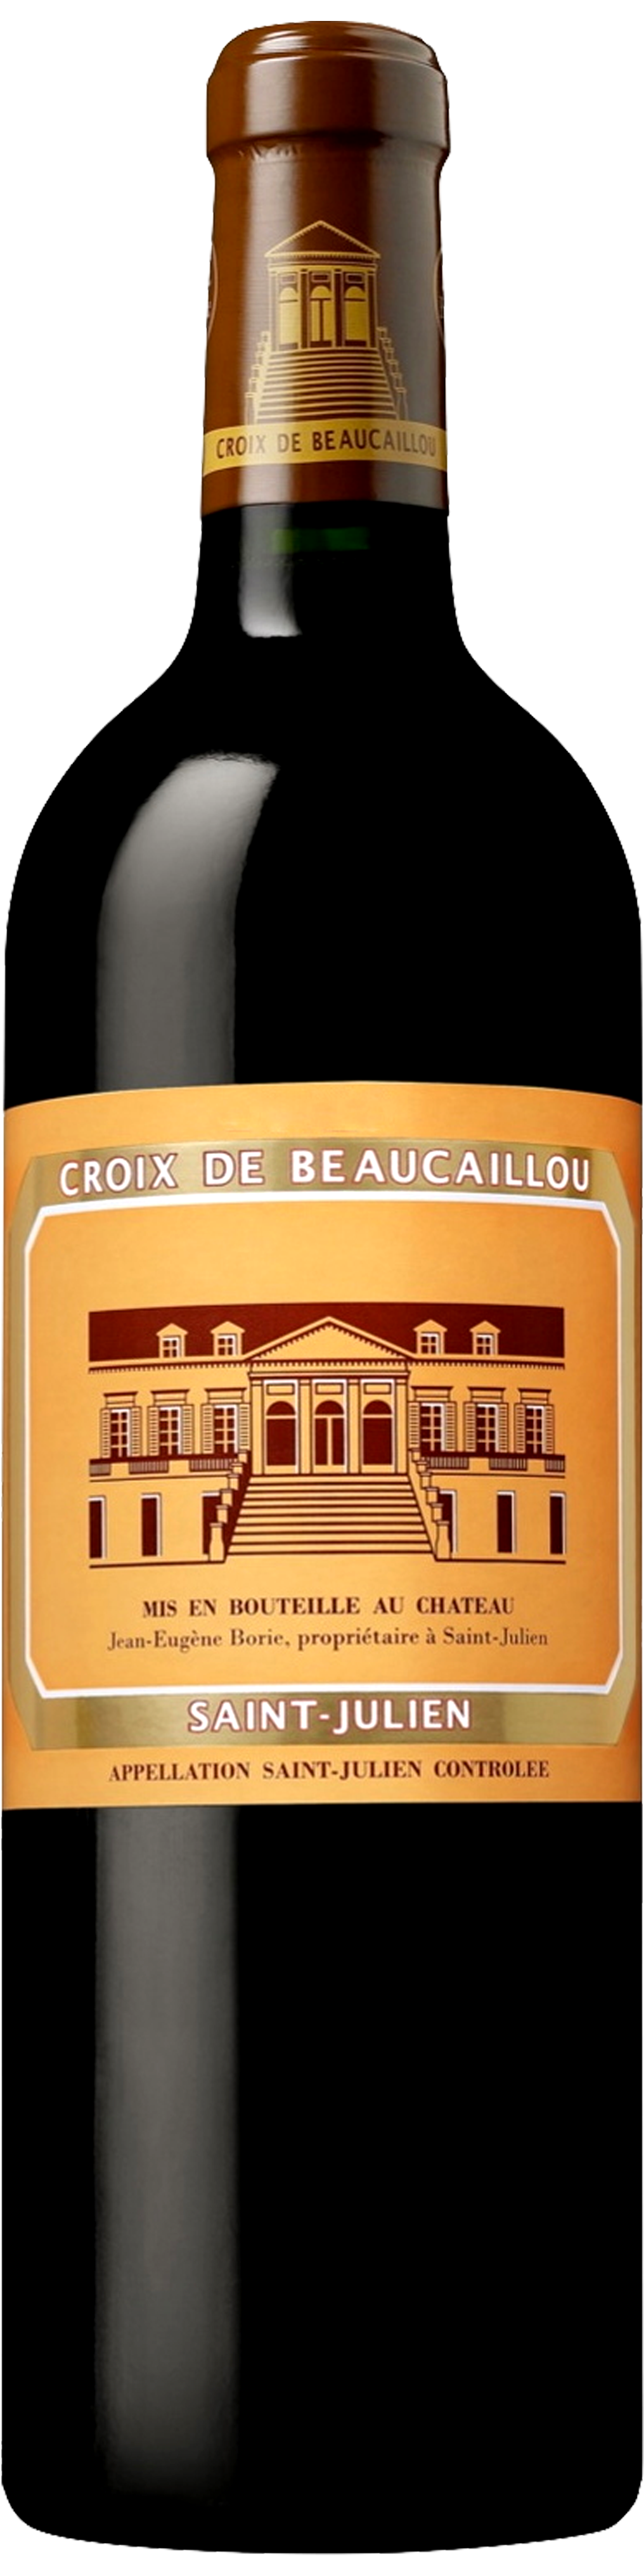 Bottle shot of 2011 La Croix de Beaucaillou, St Julien